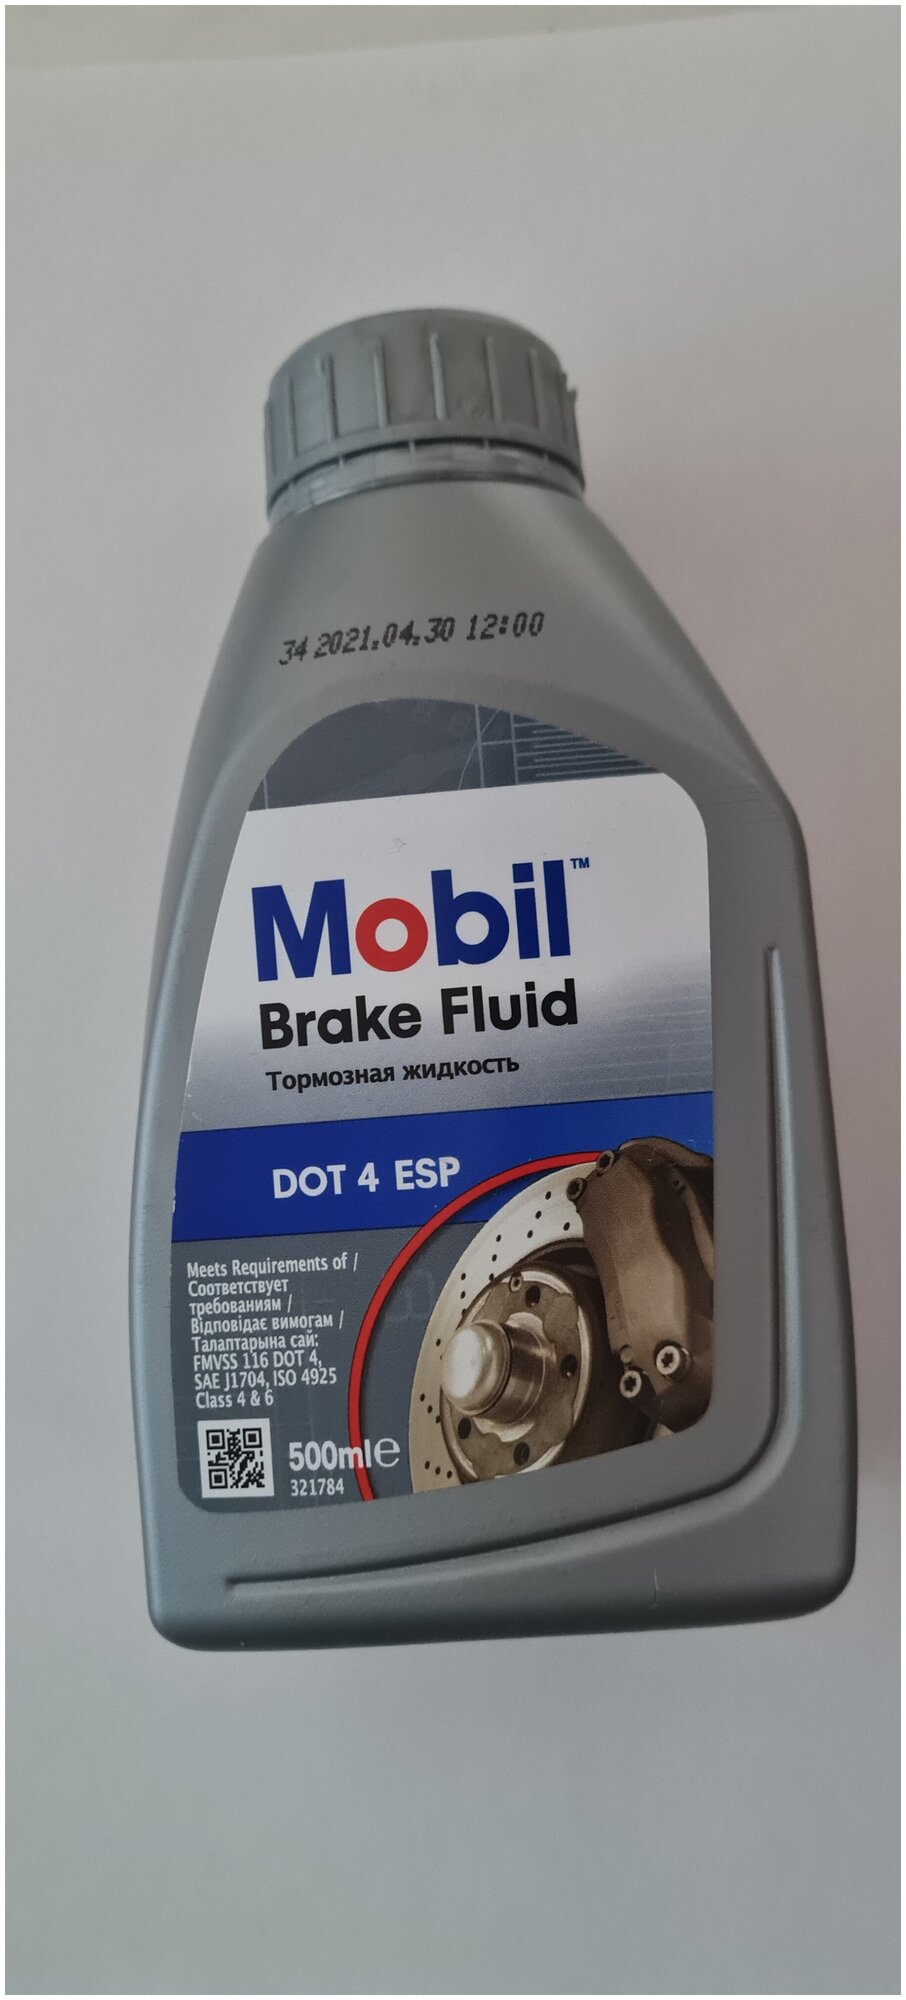 Тормозная жидкость Mobil Brake Fluid DOT4 ESP, 500 мл - фото №2